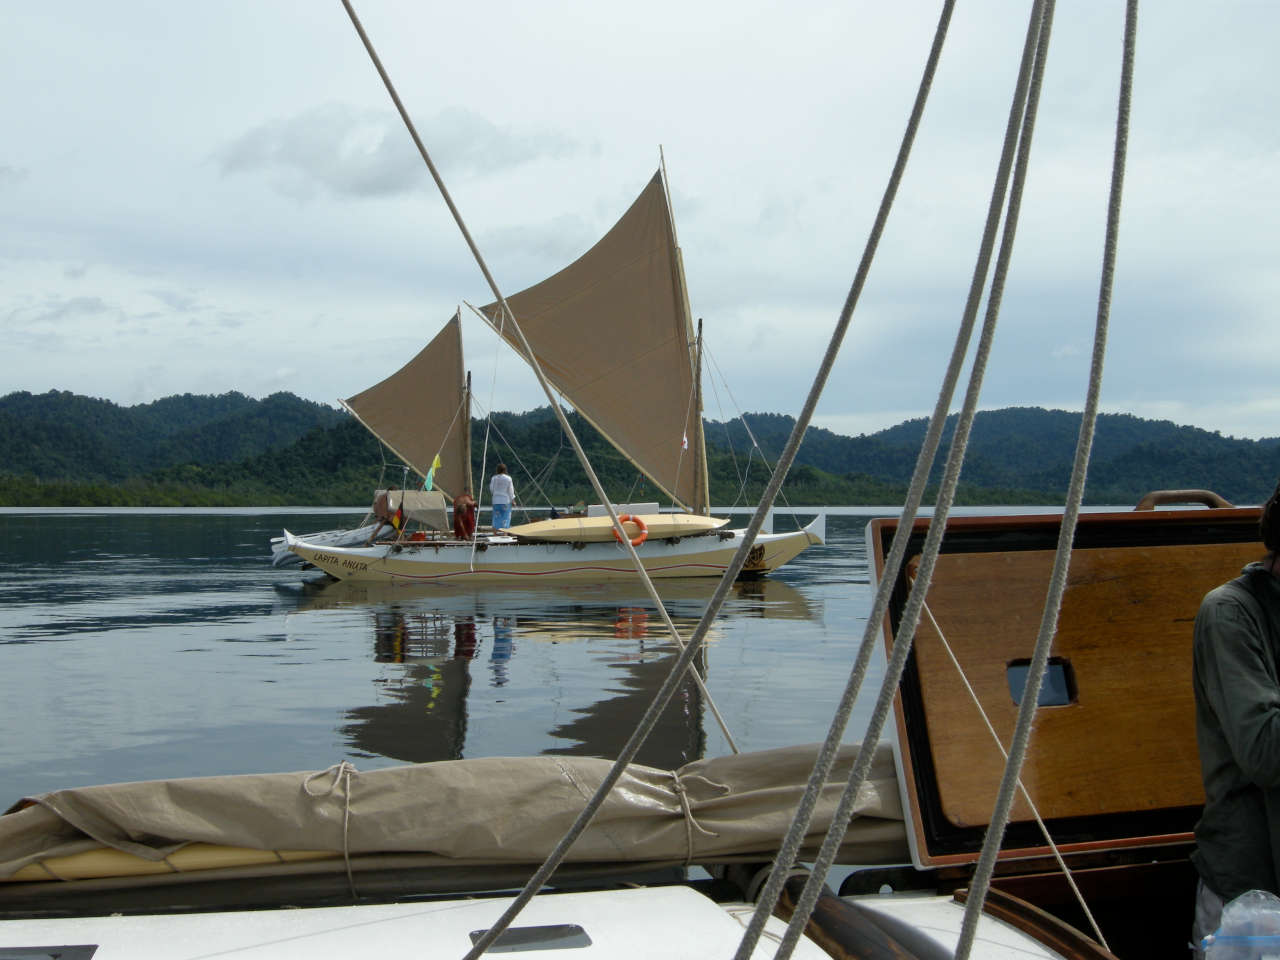 The boats sailing